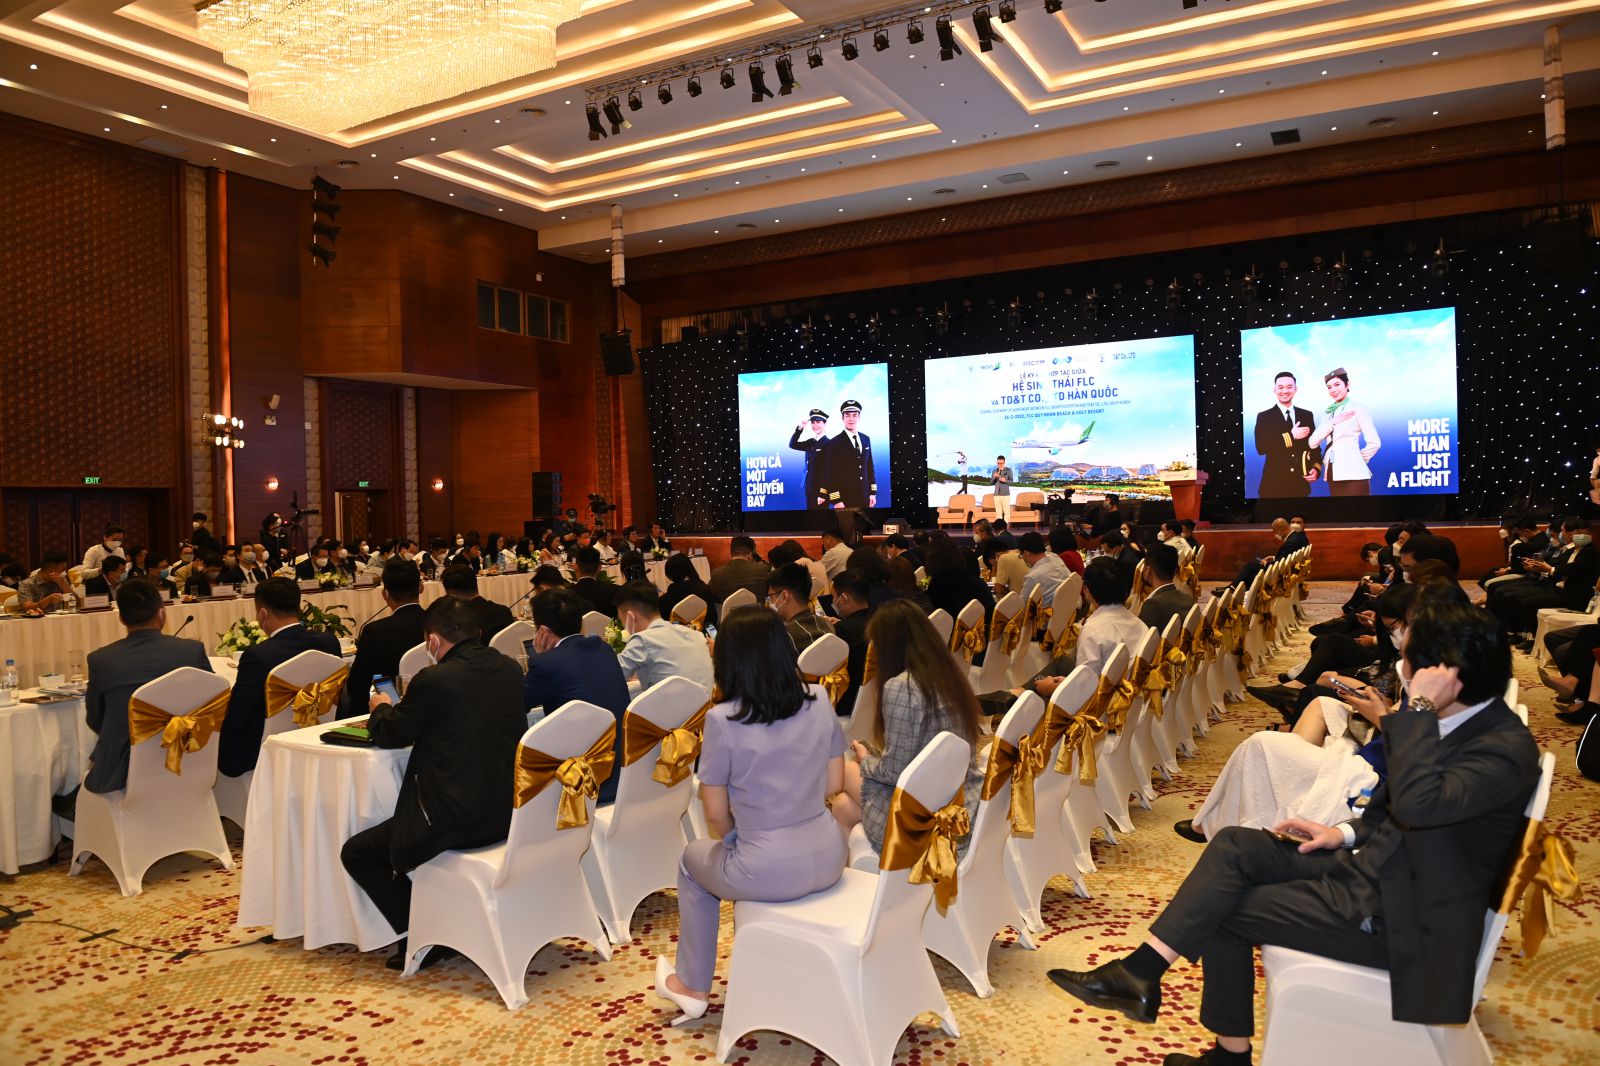 tọa đàm “Hàng không Việt mở lại bay quốc tế: Động lực mới, cơ hội mới” thu hút sự quan tâm đông đảo của các chuyên gia, doanh nghiệp cùng các hiệp hội.